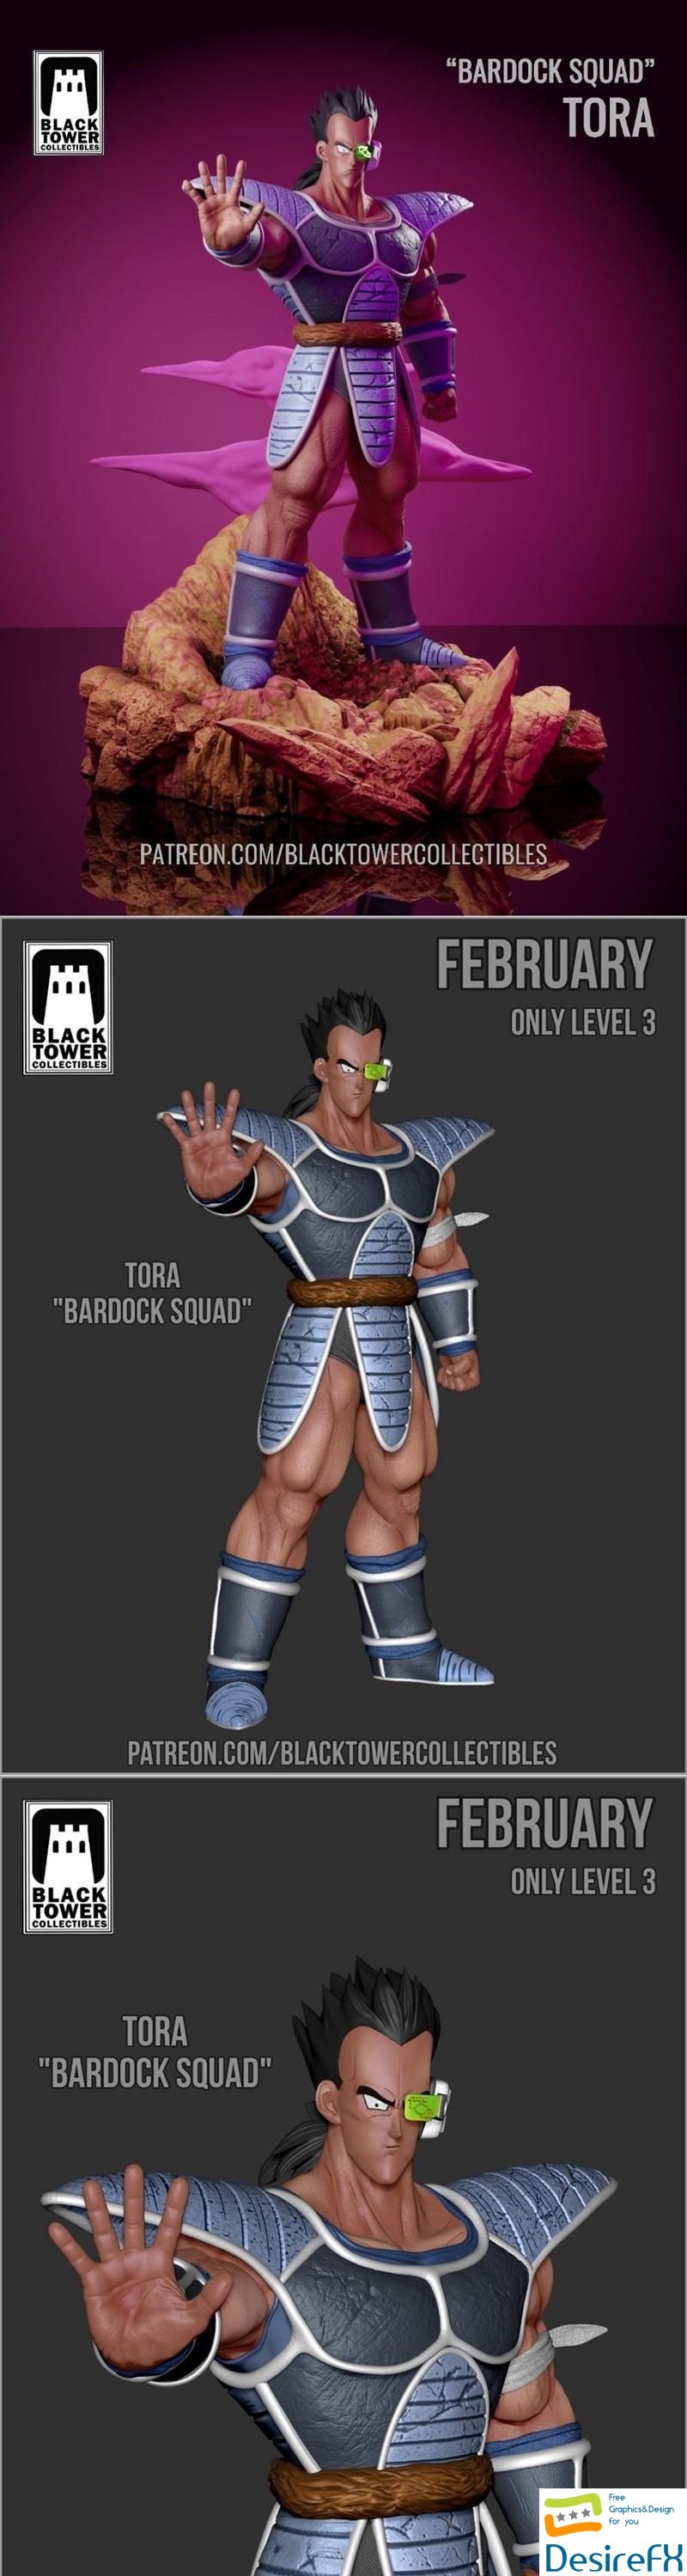 Black Towe Collectibles - Tora Bardock Squad 3D Print